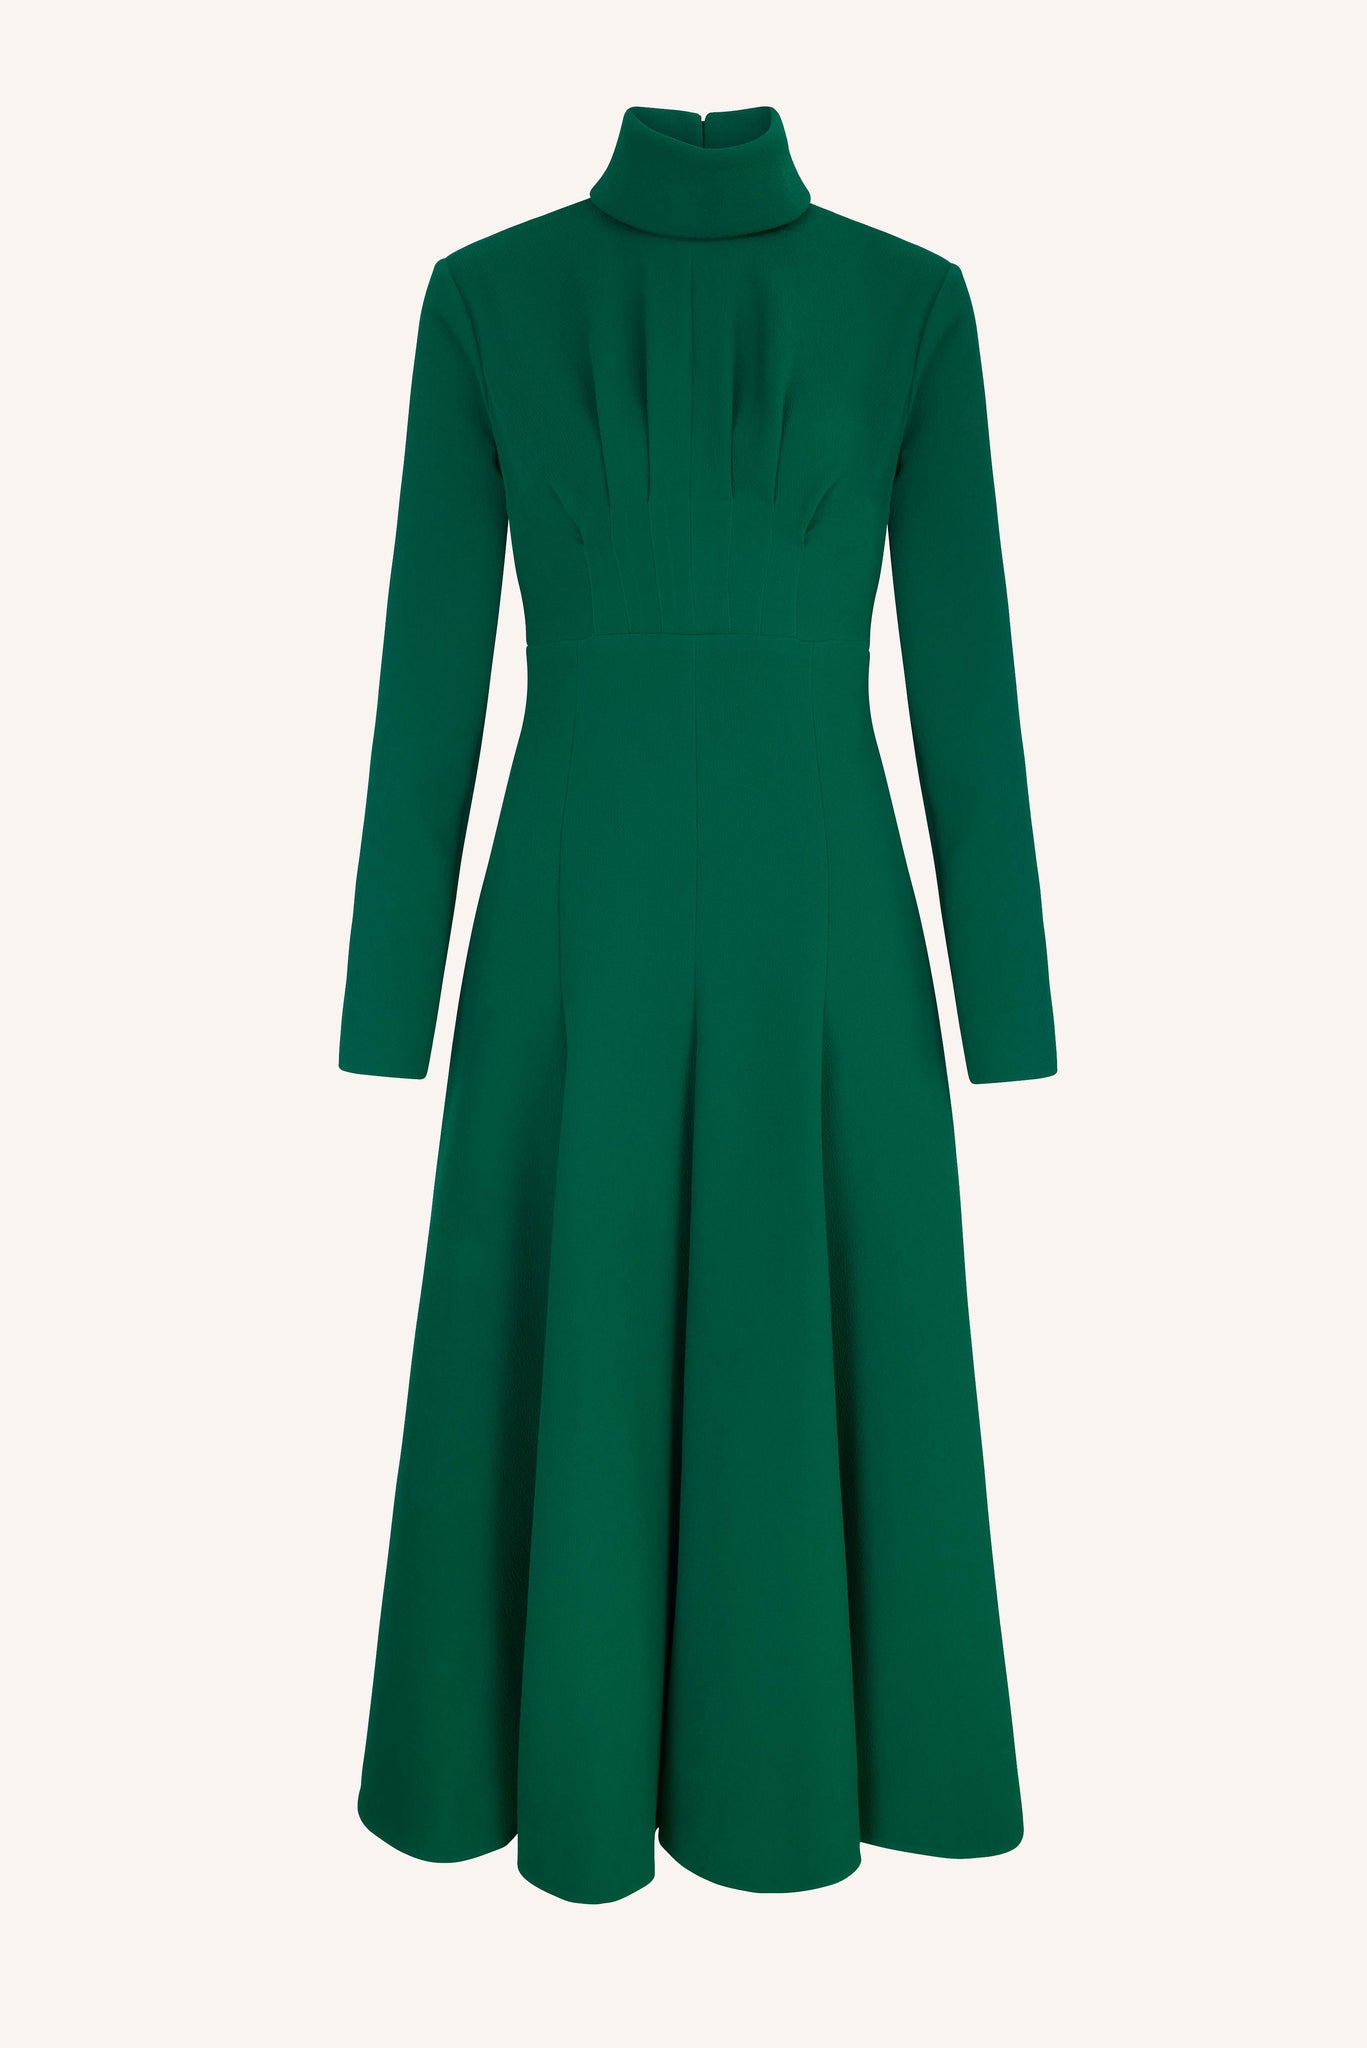 Oakley High Neck Dress in Jade Green Double Crepe | Emilia Wickstead